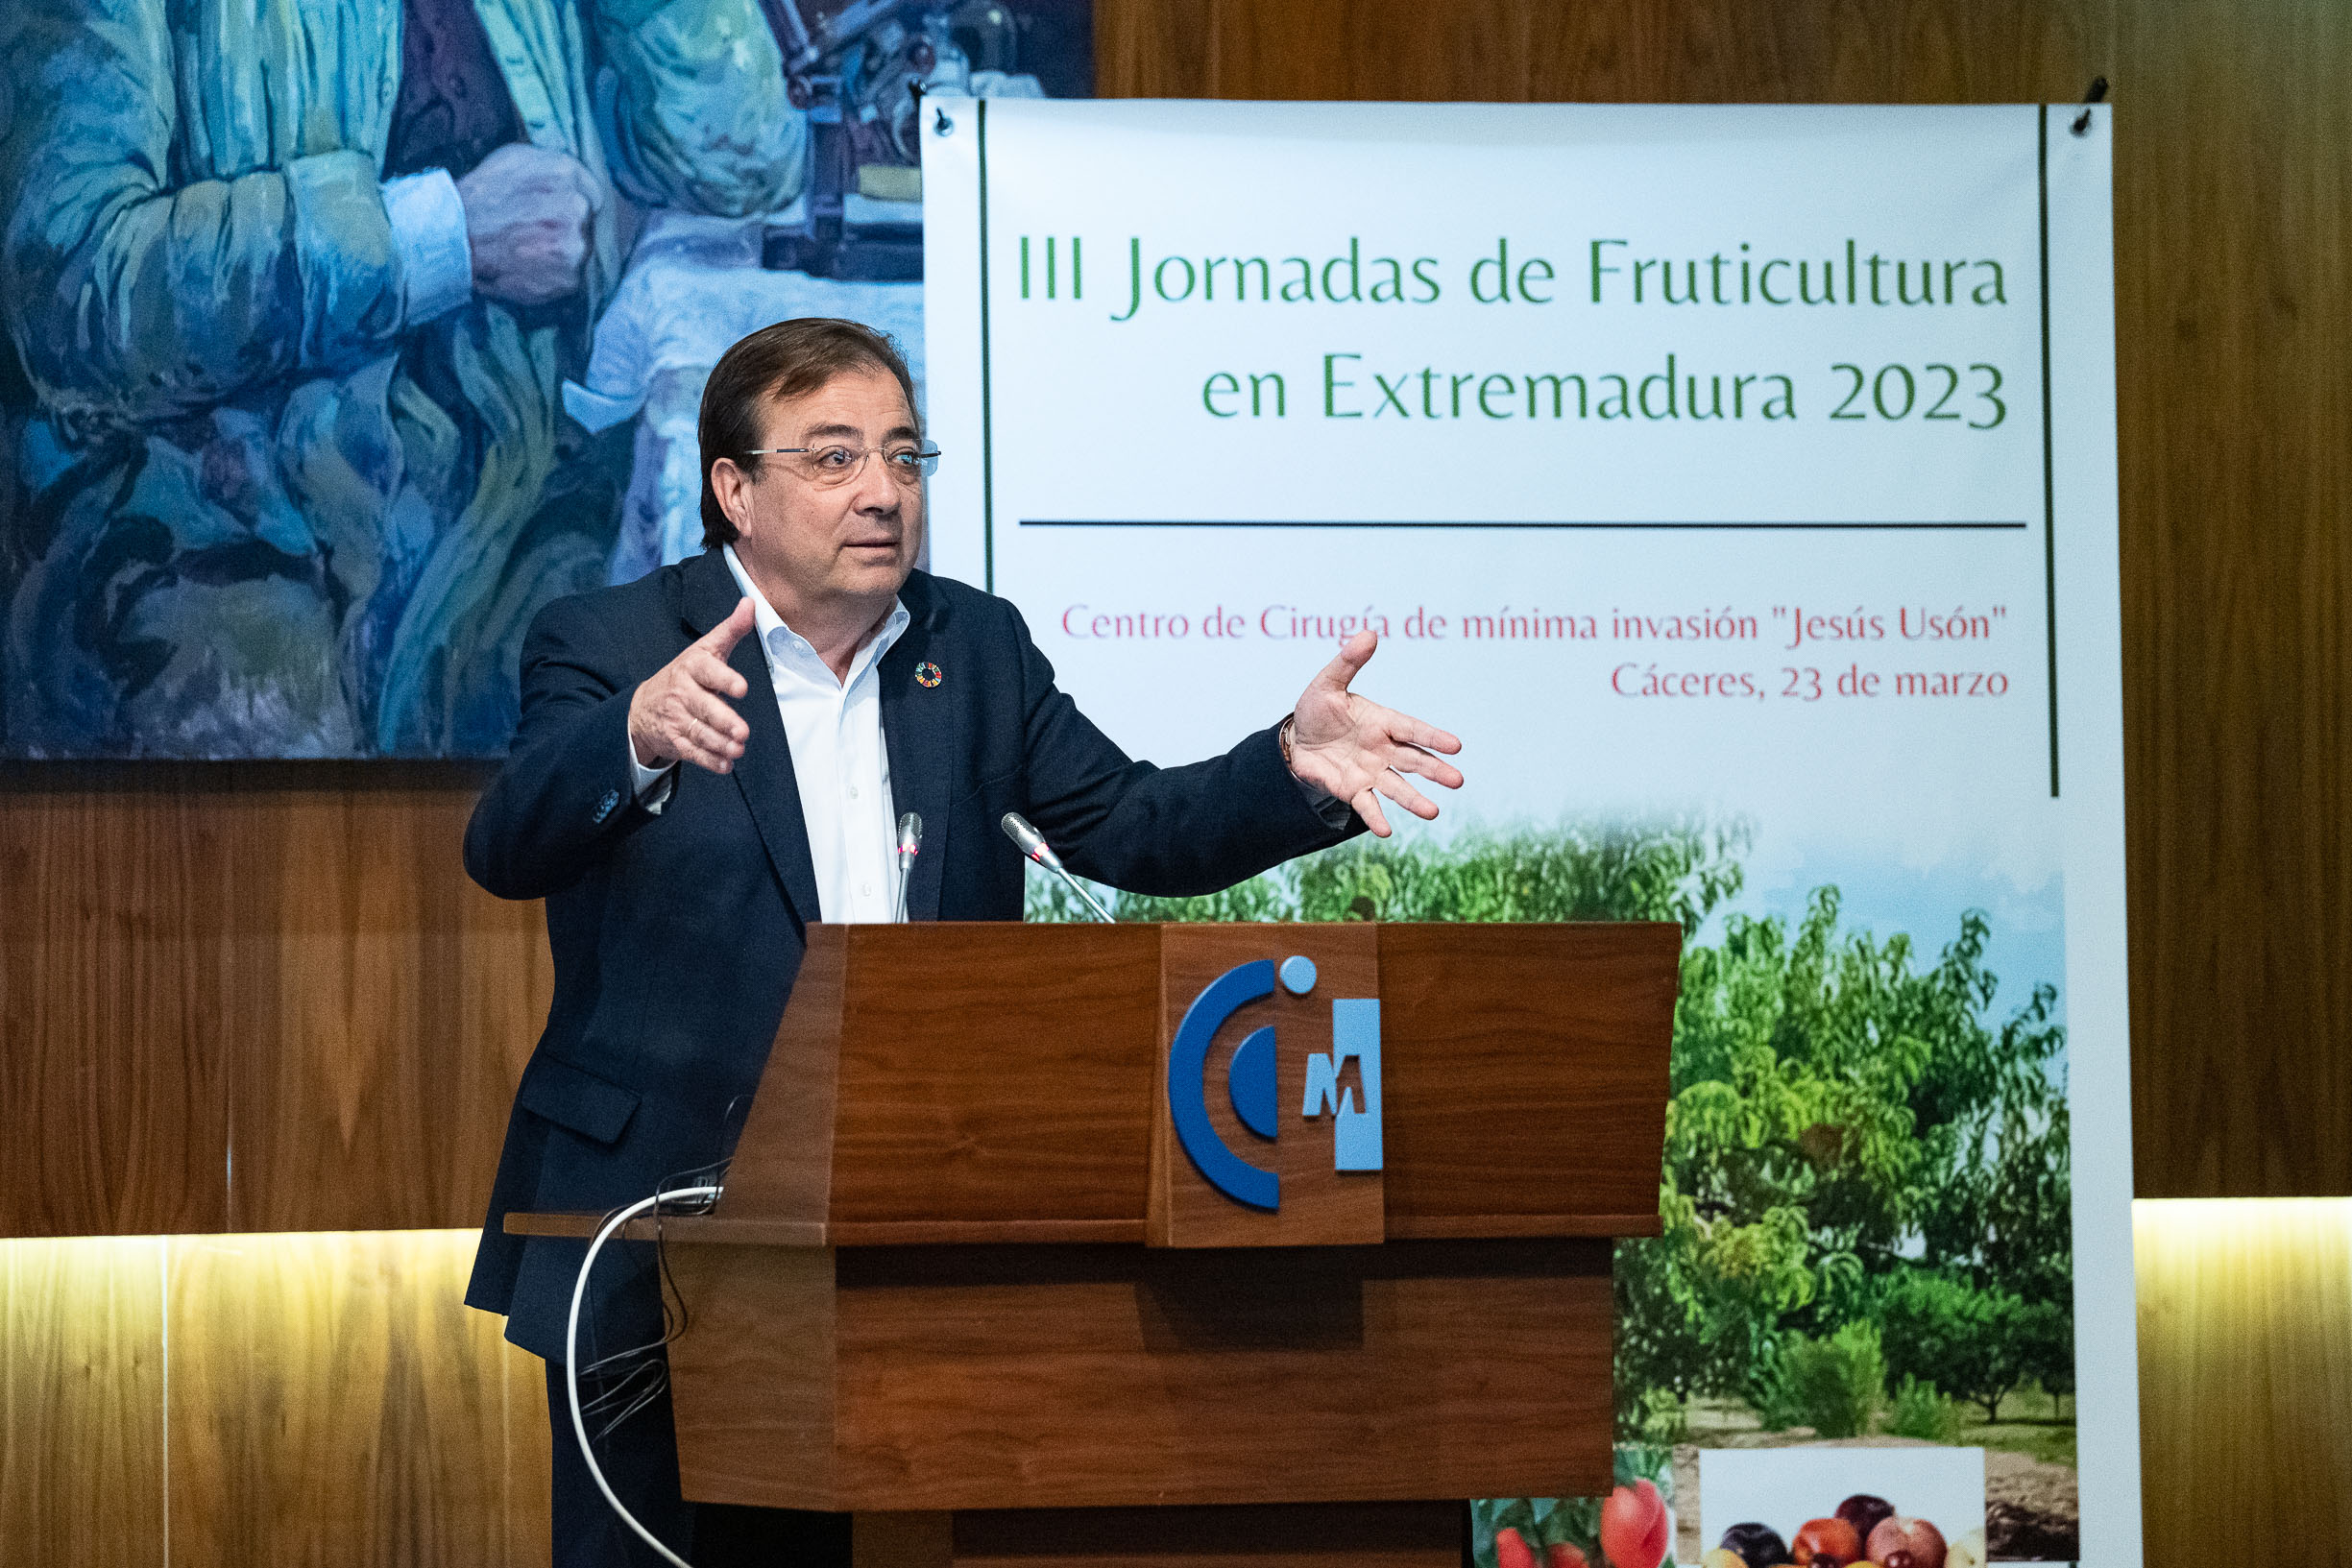 Foto del presidente de la Junta de Extremadura durante su intervención en el congreso